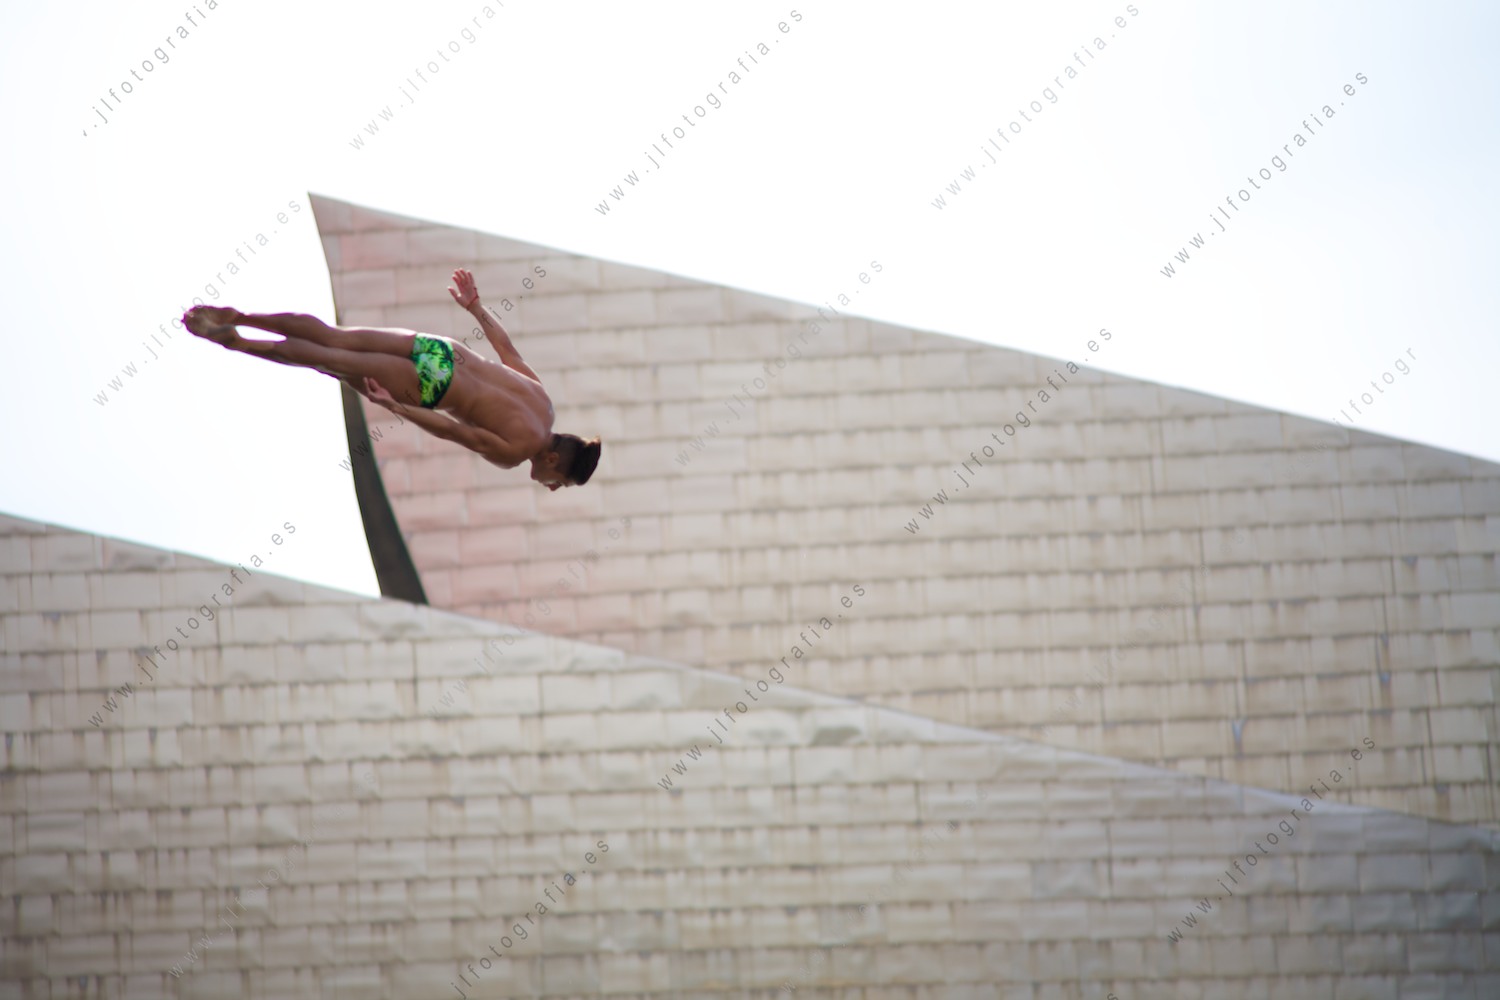 Precioso movimiento frente al museo Guggenheim, de un saltador clavadista en el Red Bull Cliff Diving en Bilbao